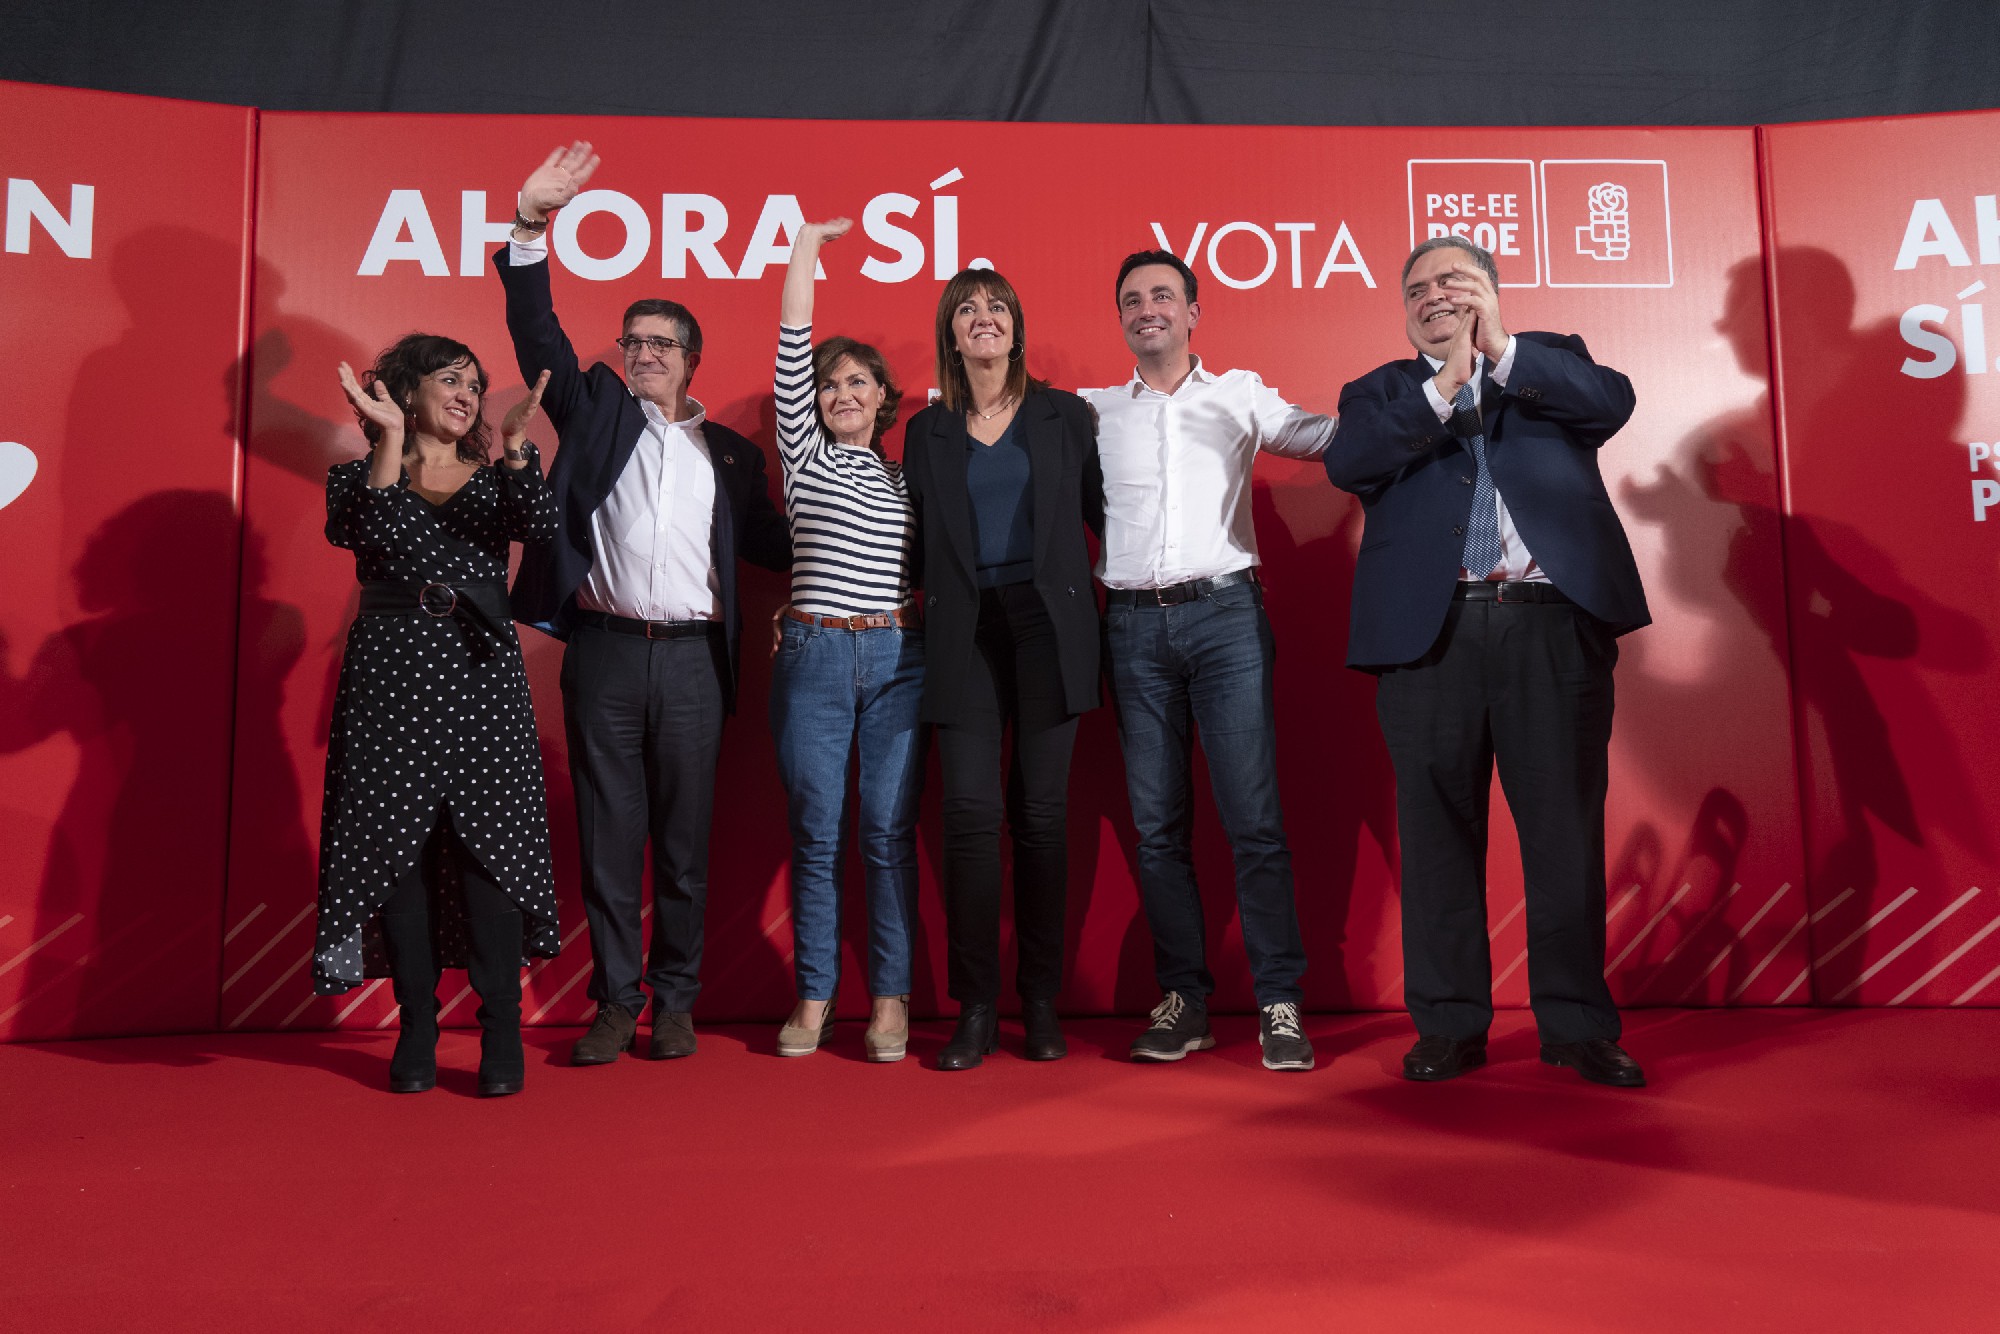 Carmen Calvo, Patxi López, Idoia Mendia en Bilbao.| Foto: Socialistas Vascos